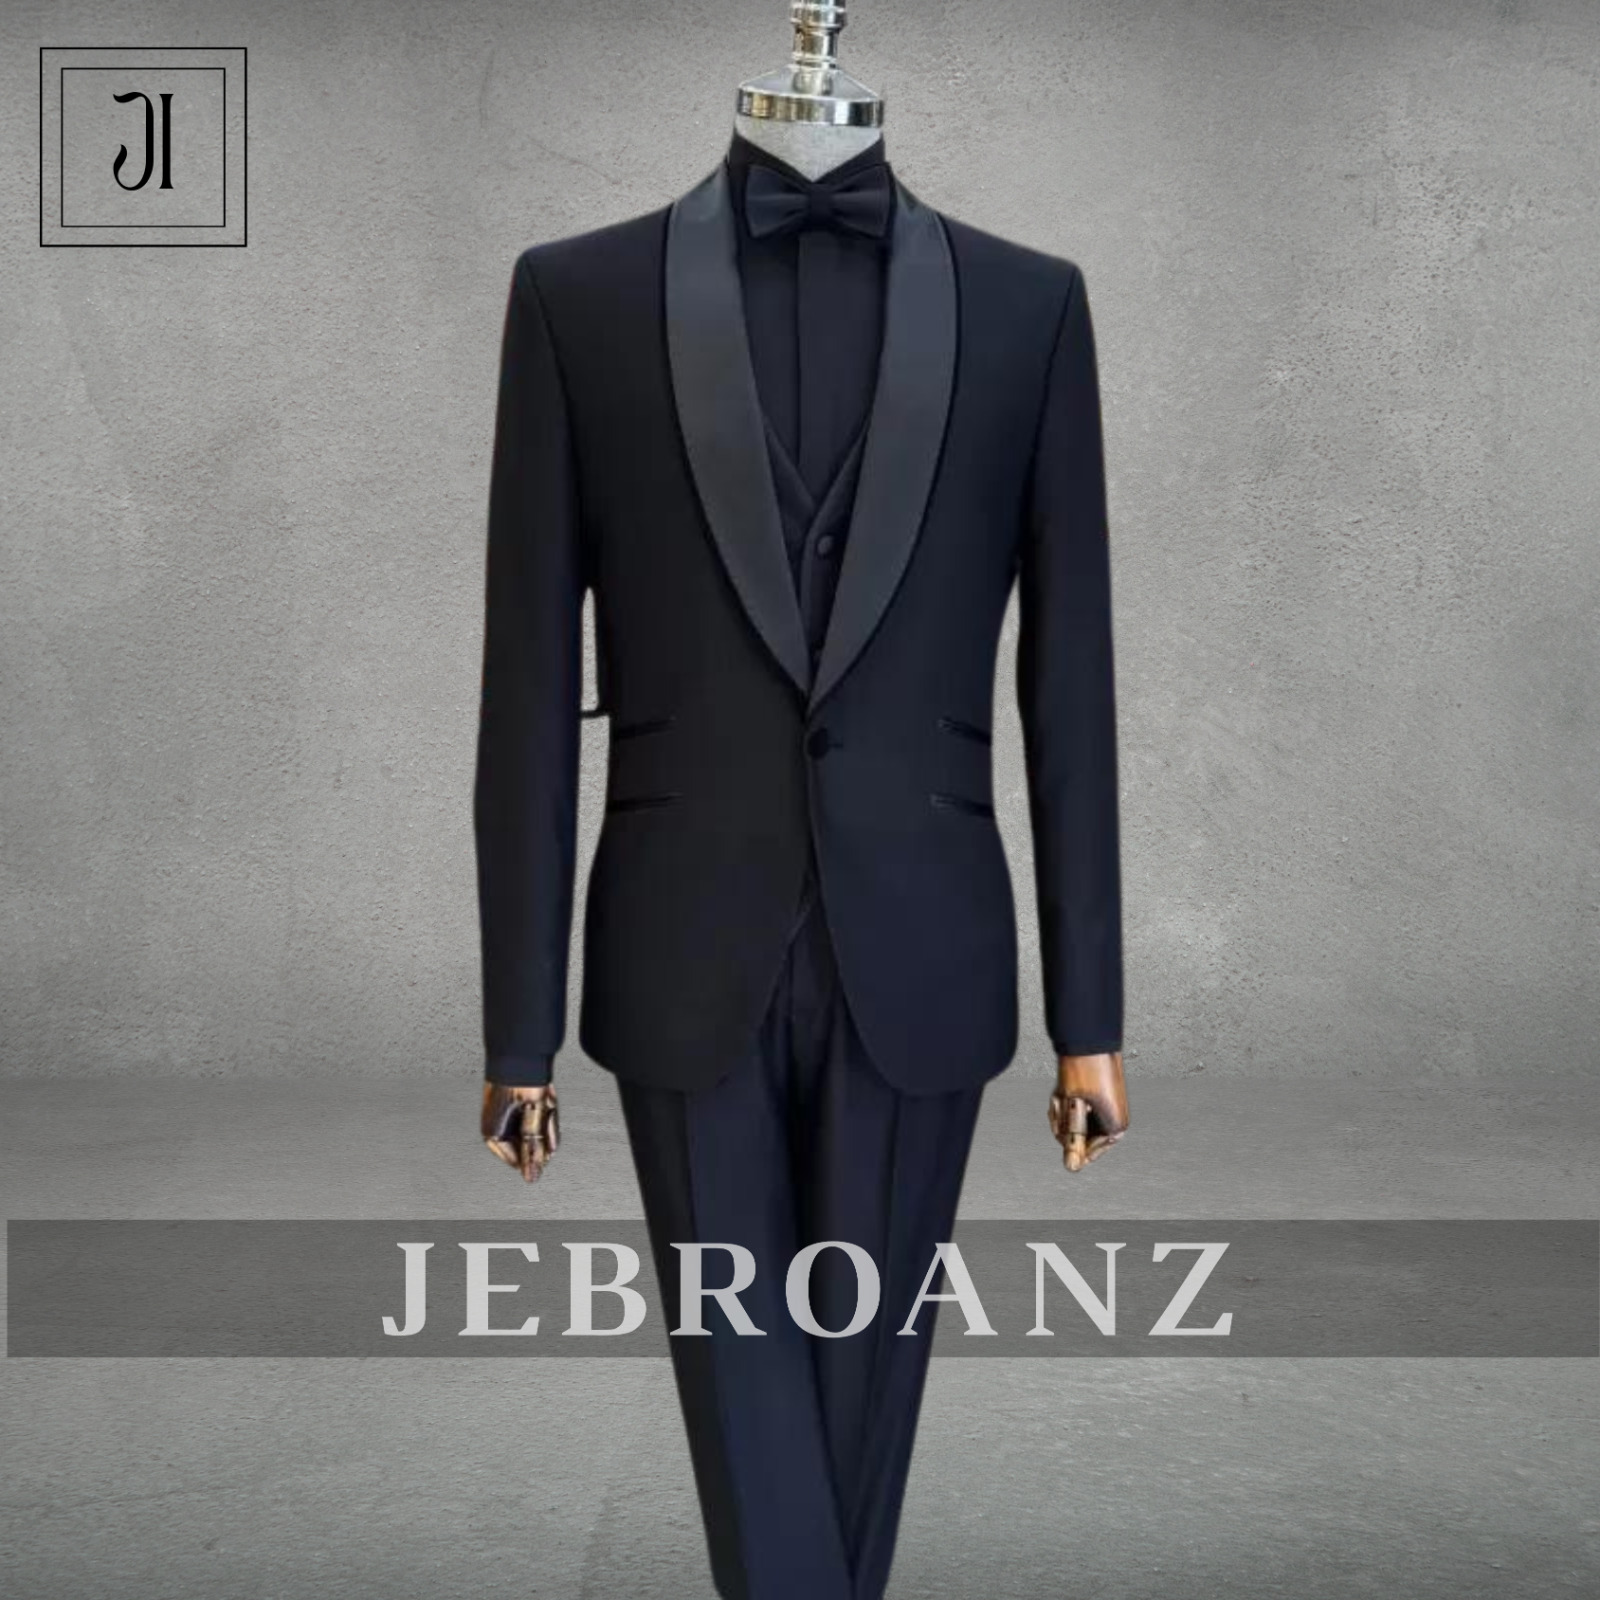 New Classy Blue suit with Lapels -Suit For men,3 piece Suit, Formal Wedding Suit